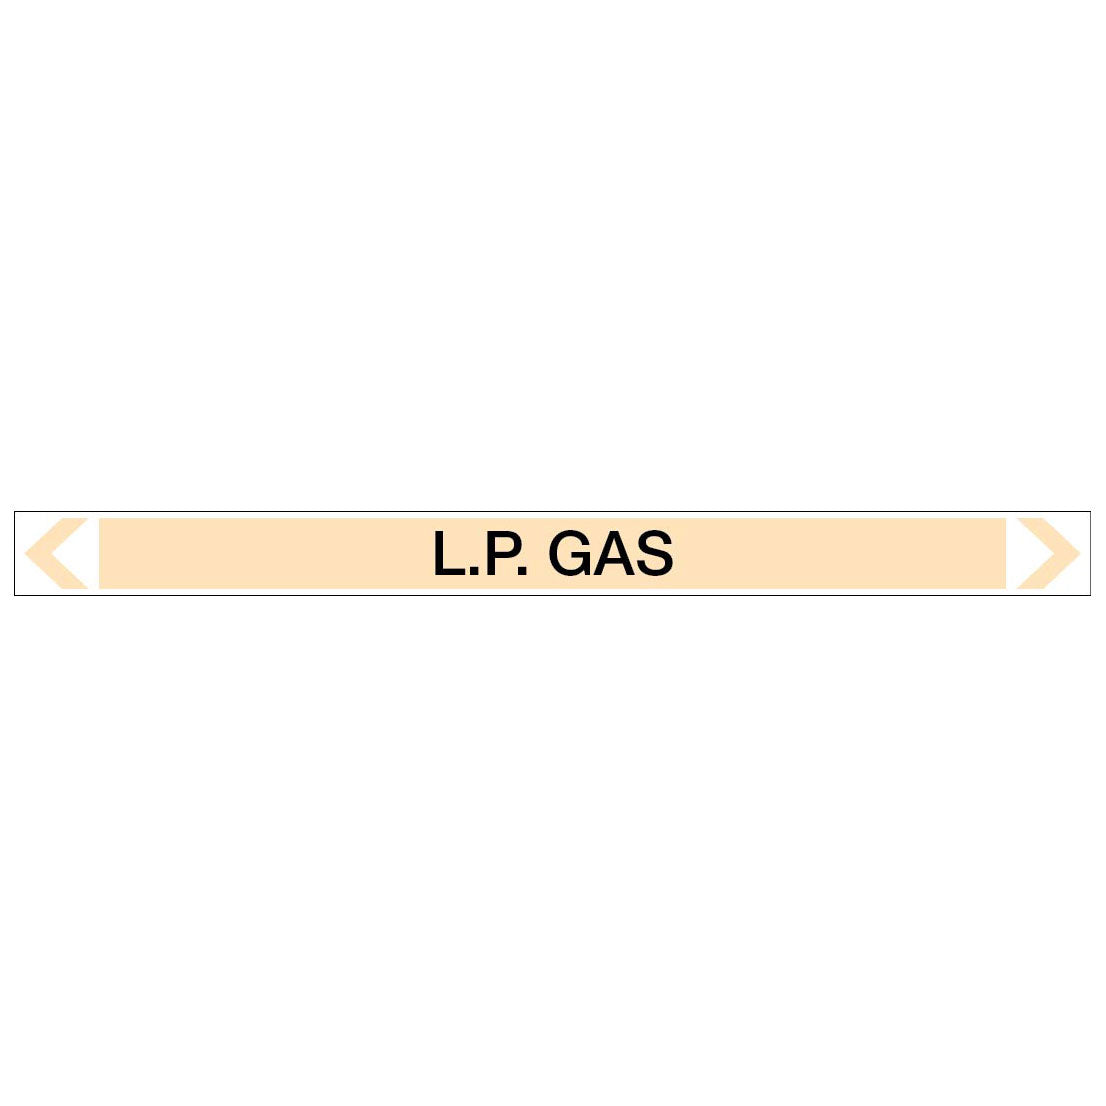 Gases - L.P. Gas - Pipe Marker Sticker